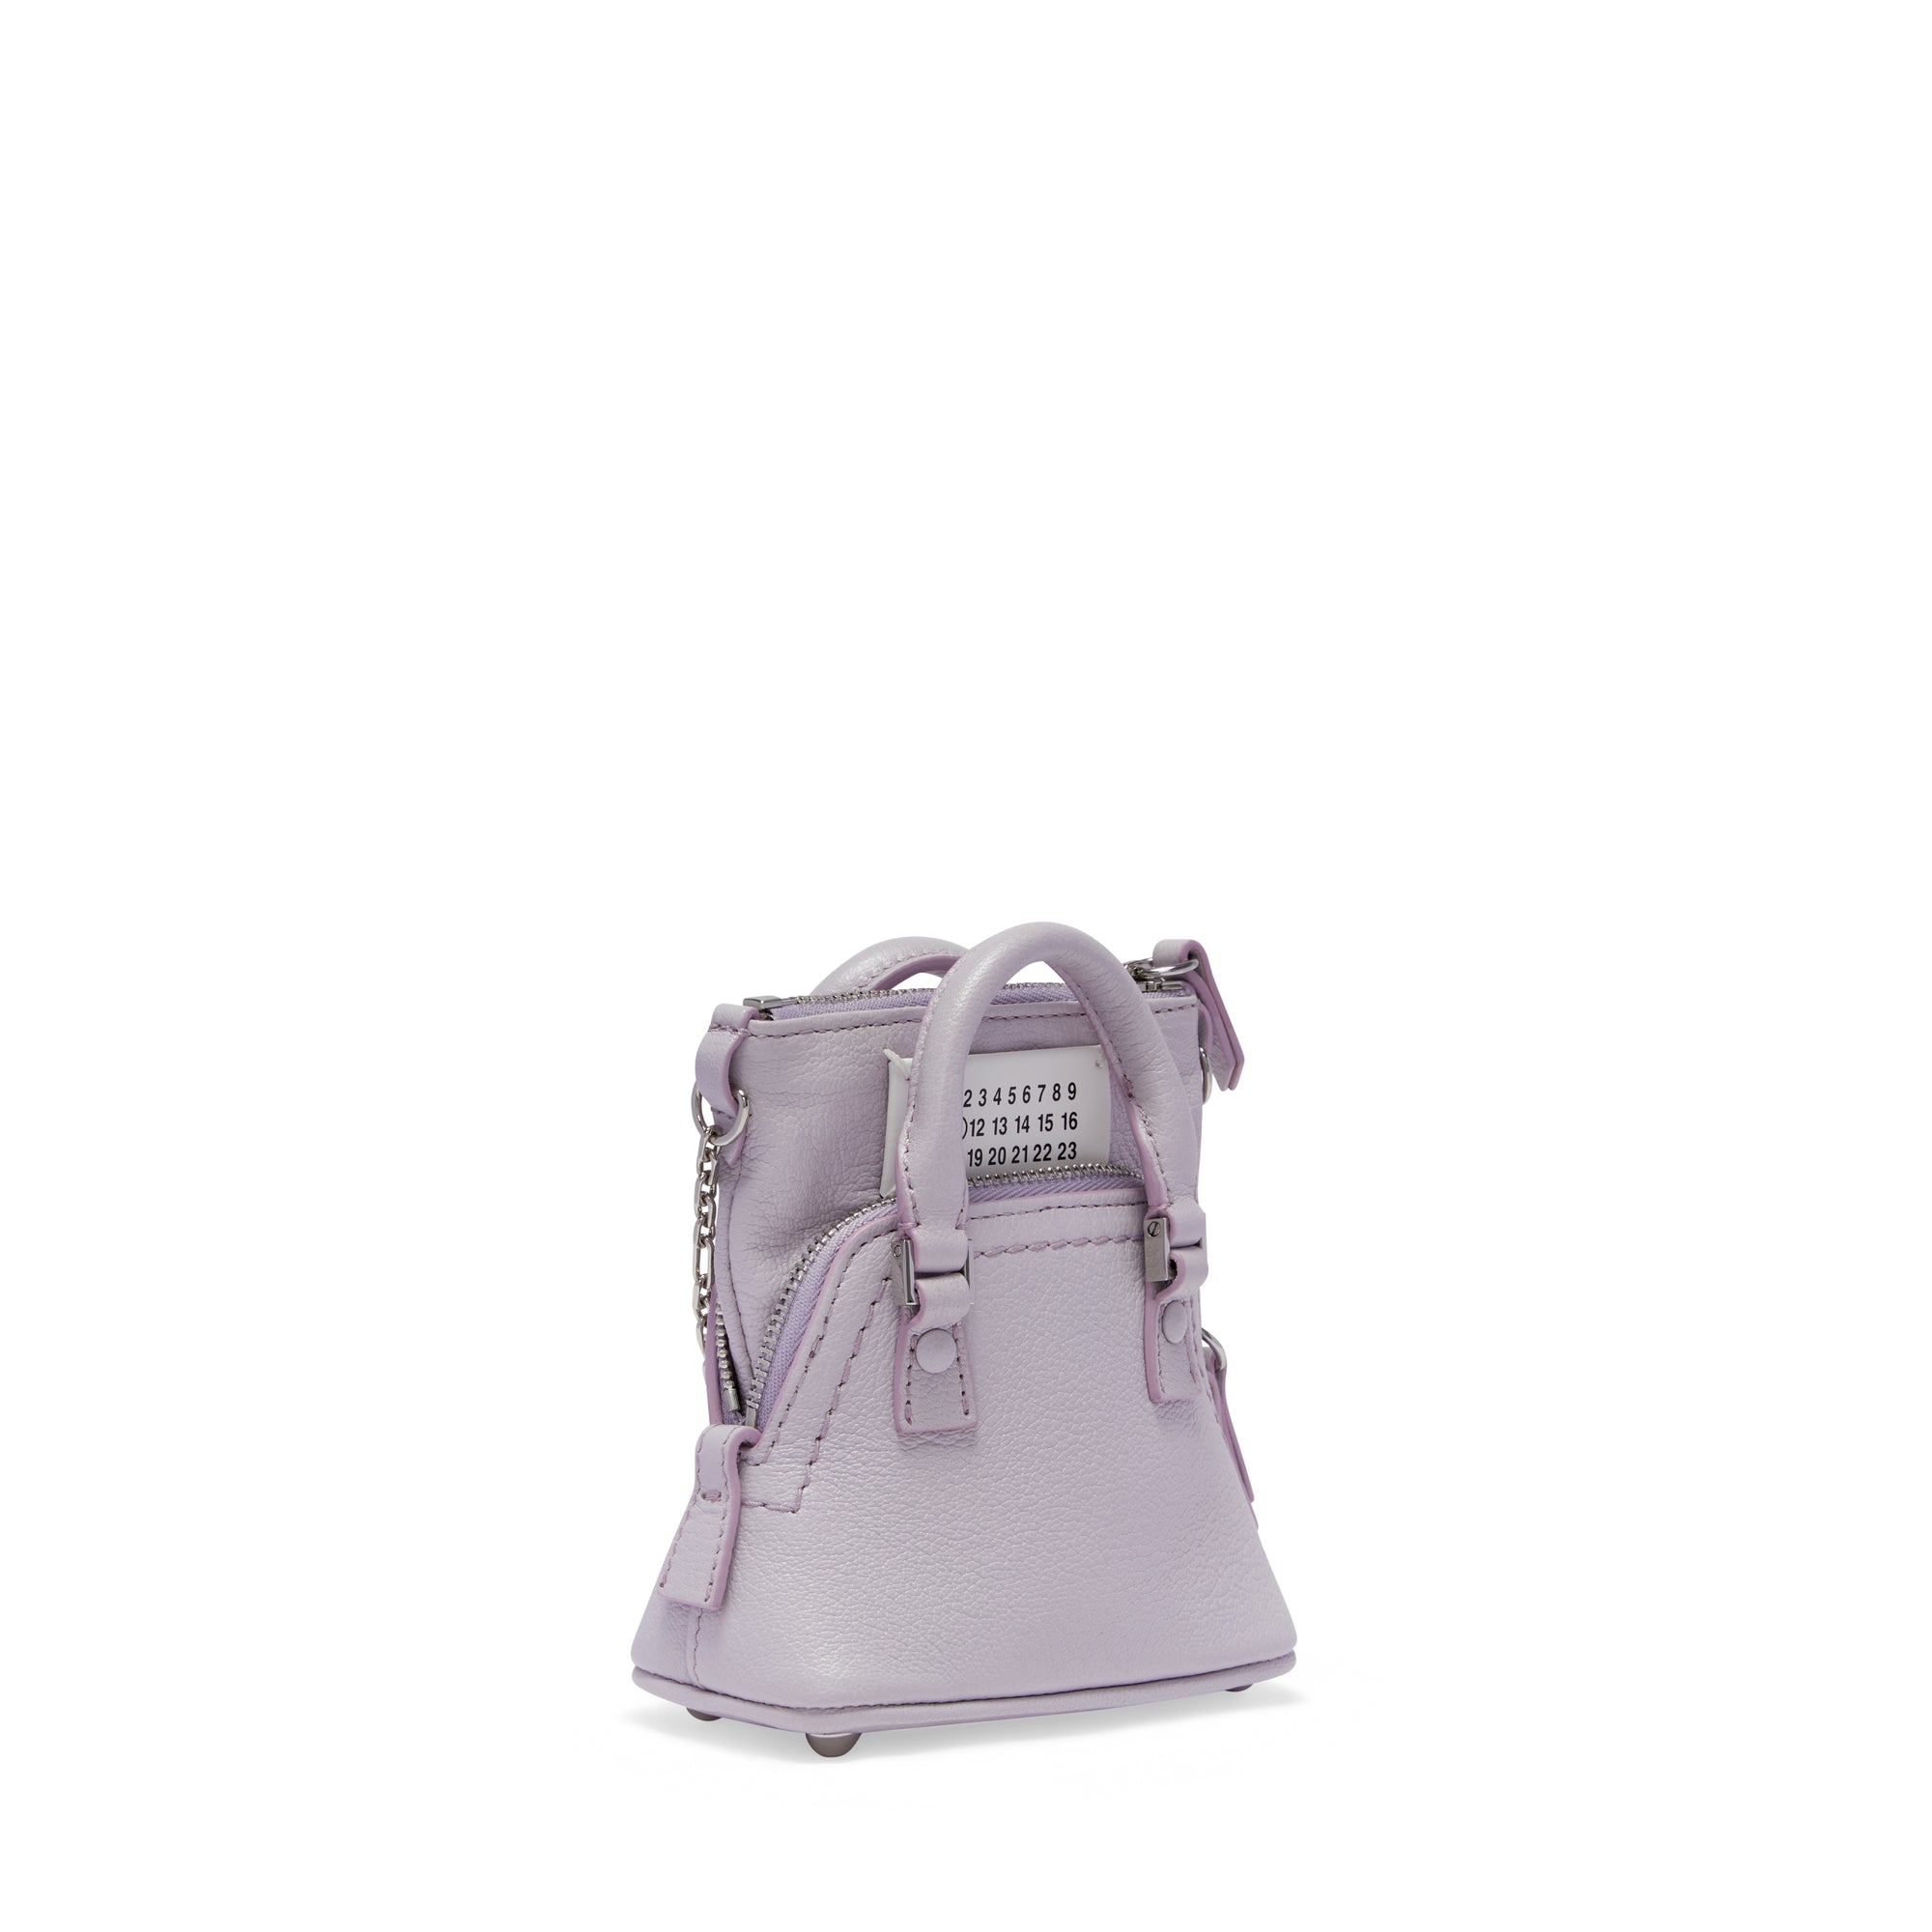 Maison Margiela - Women’s 5AC Classique Baby Bag - (Light Purple) view 2